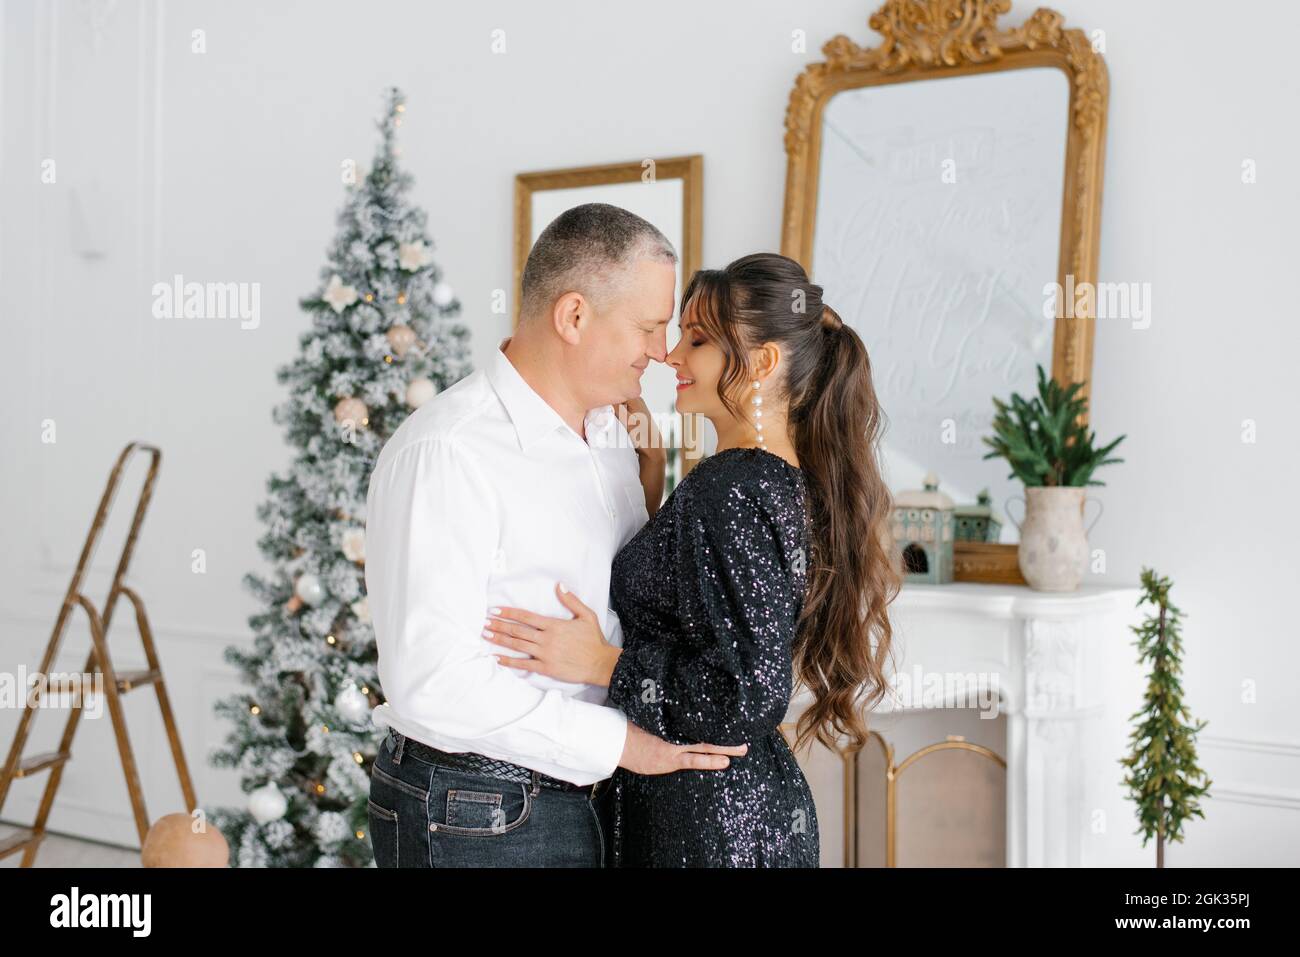 Un couple amoureux rencontre le nouvel an et célèbre Noël, embrassant, riant à l'arbre de Noël Banque D'Images